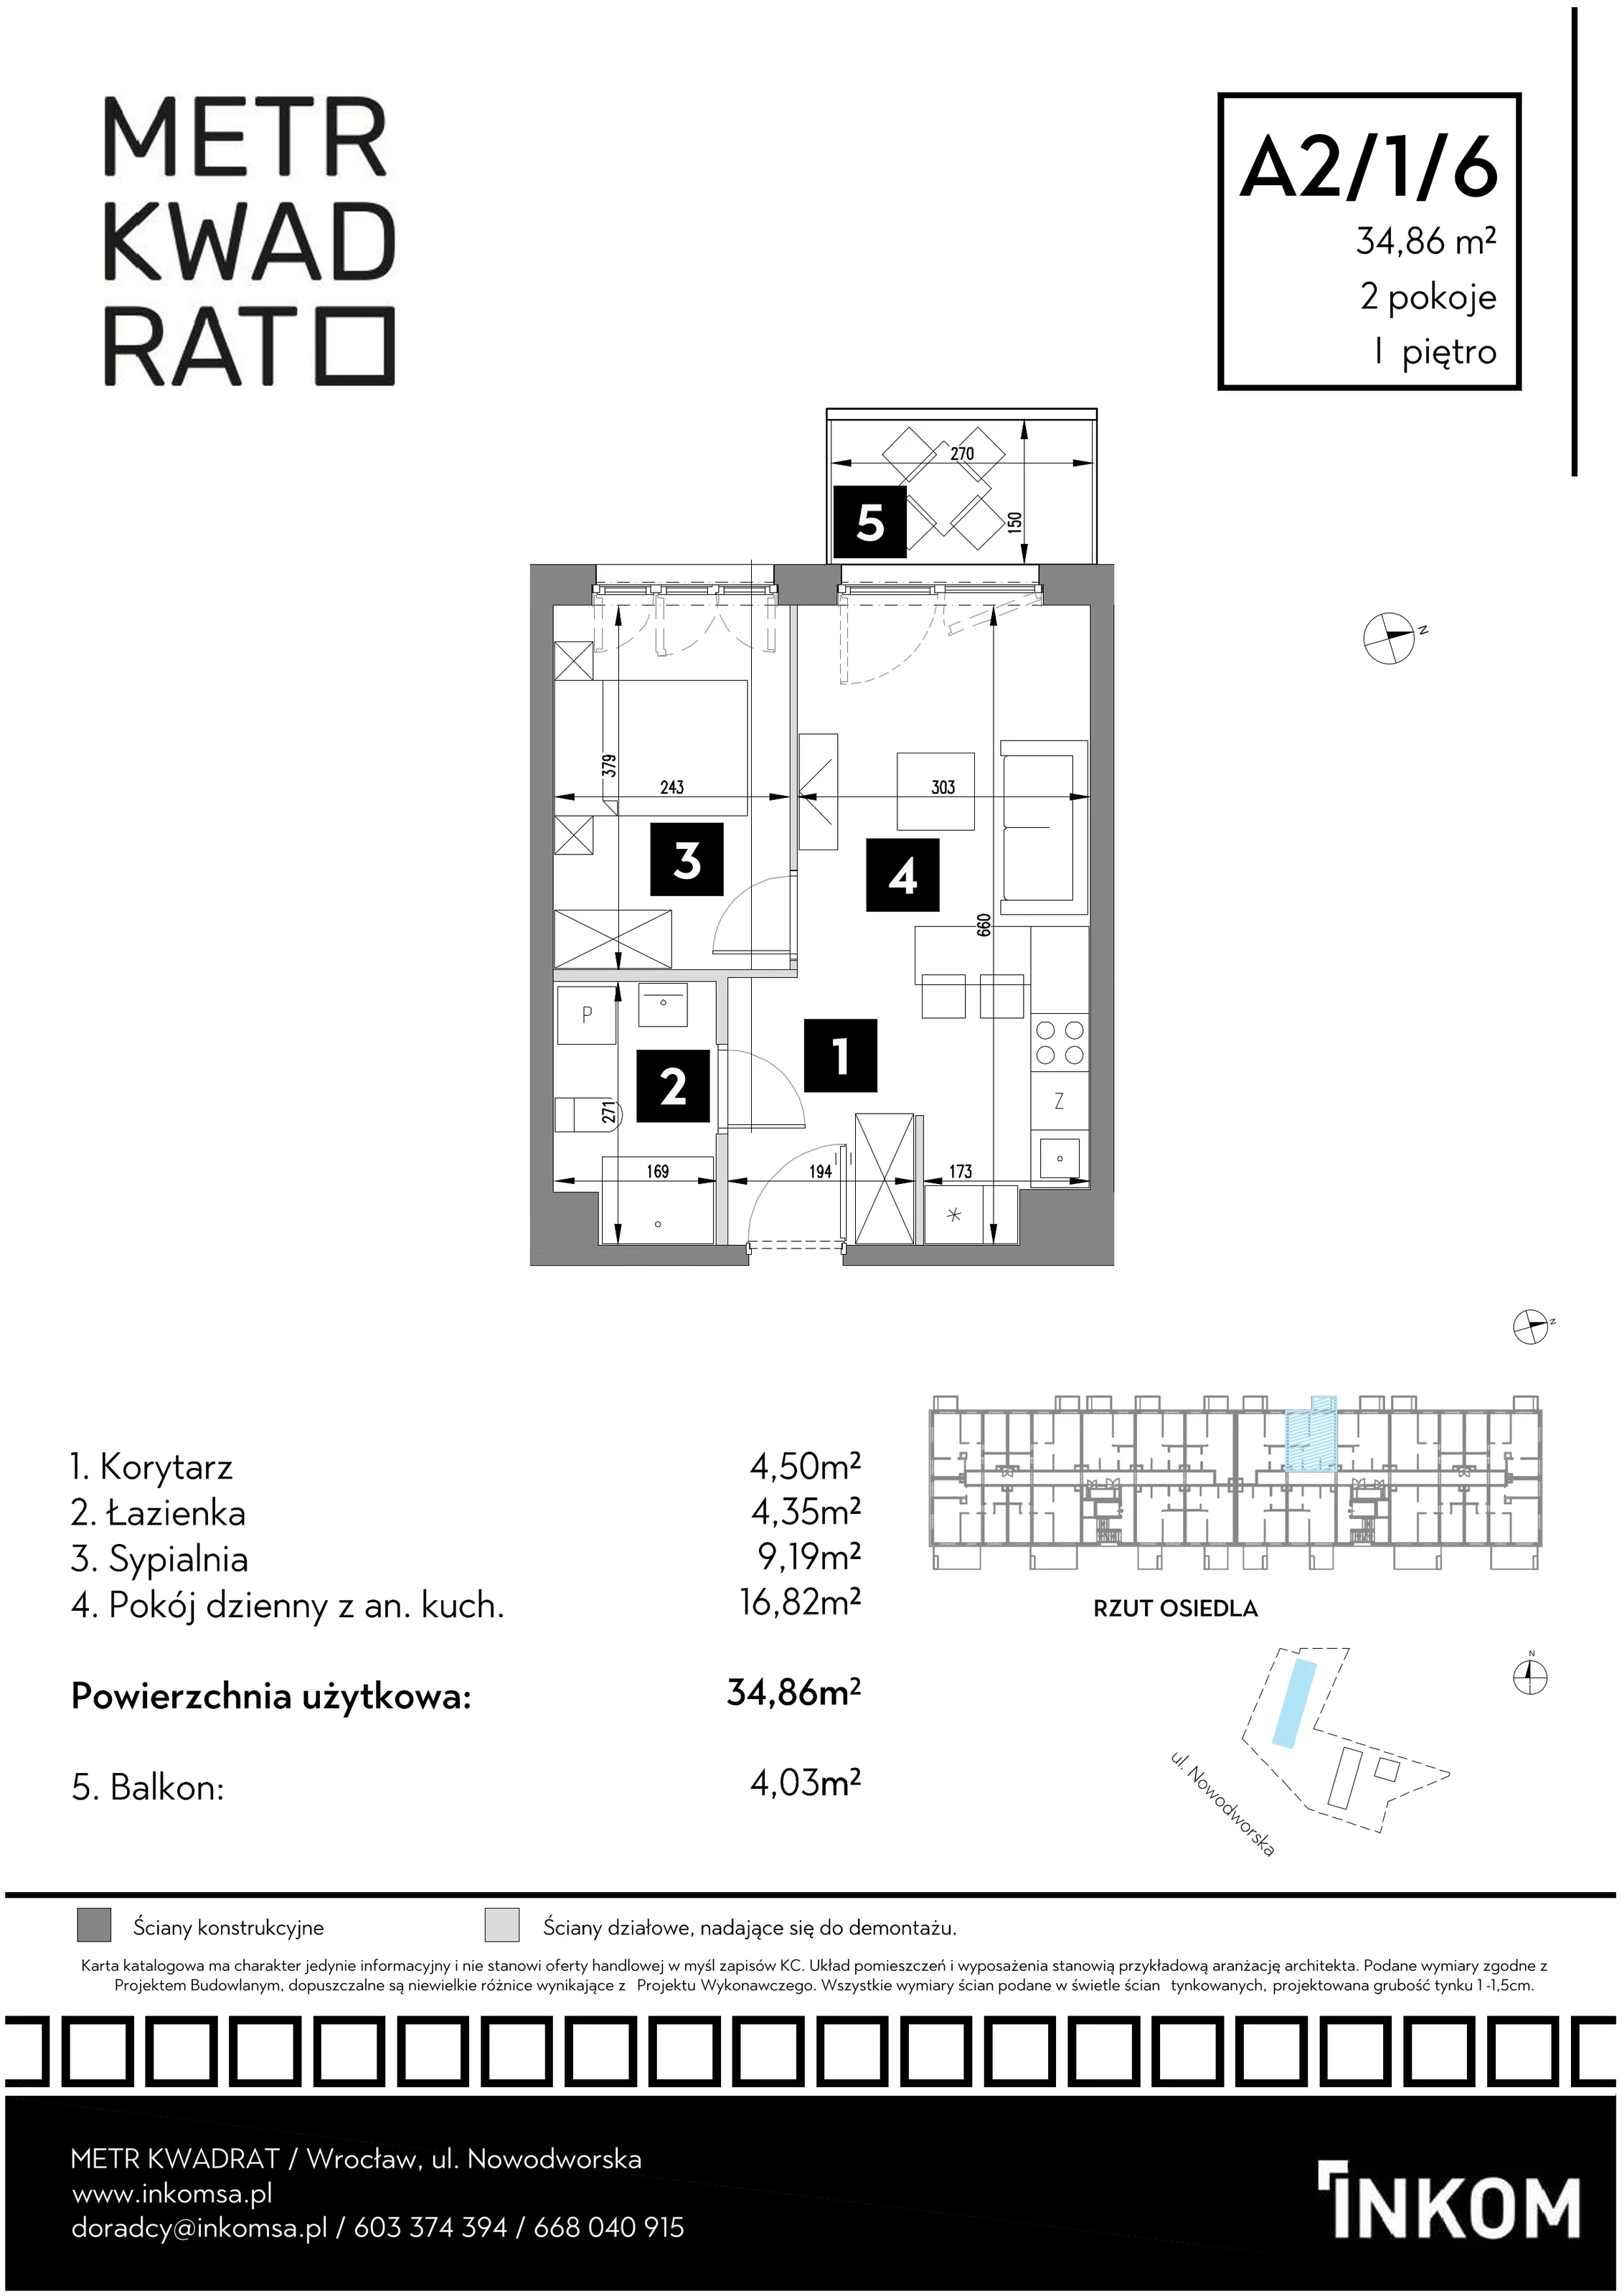 Mieszkanie 34,86 m², piętro 1, oferta nr A2/1/6, Metr Kwadrat, Wrocław, Nowy Dwór, ul. Nowodworska 17B